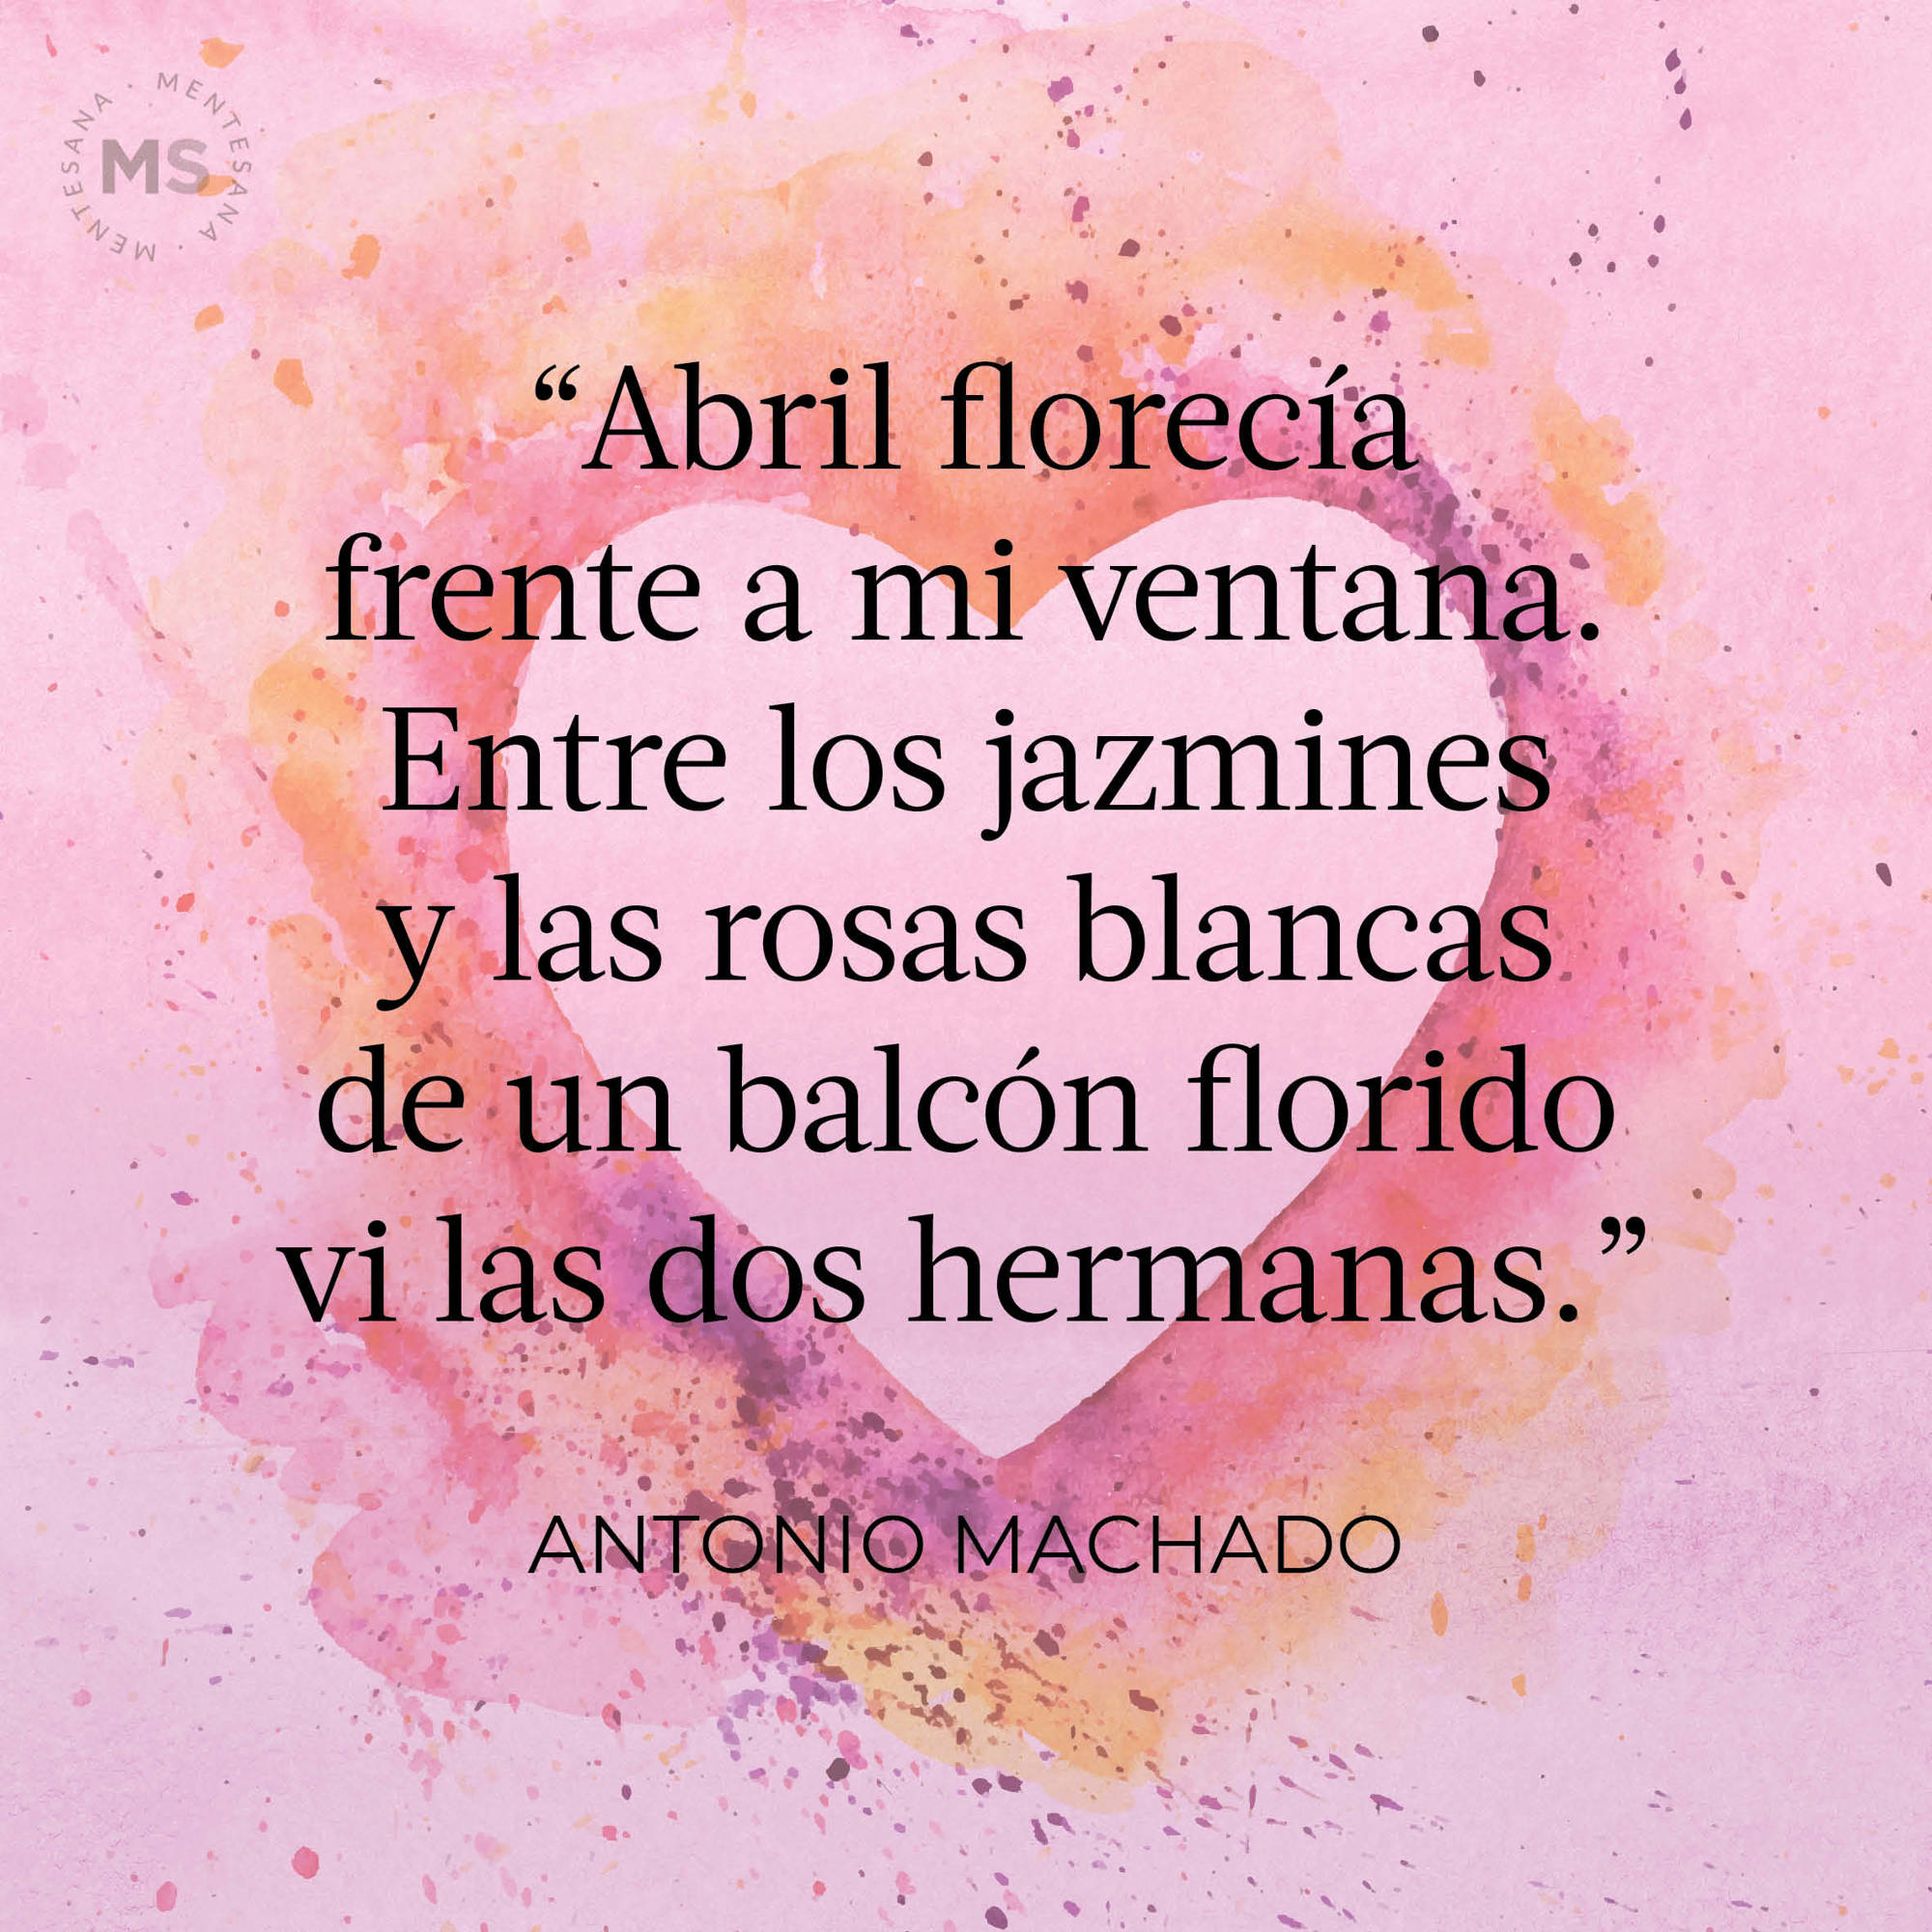 Abril florecía (poema de Antonio Machado)